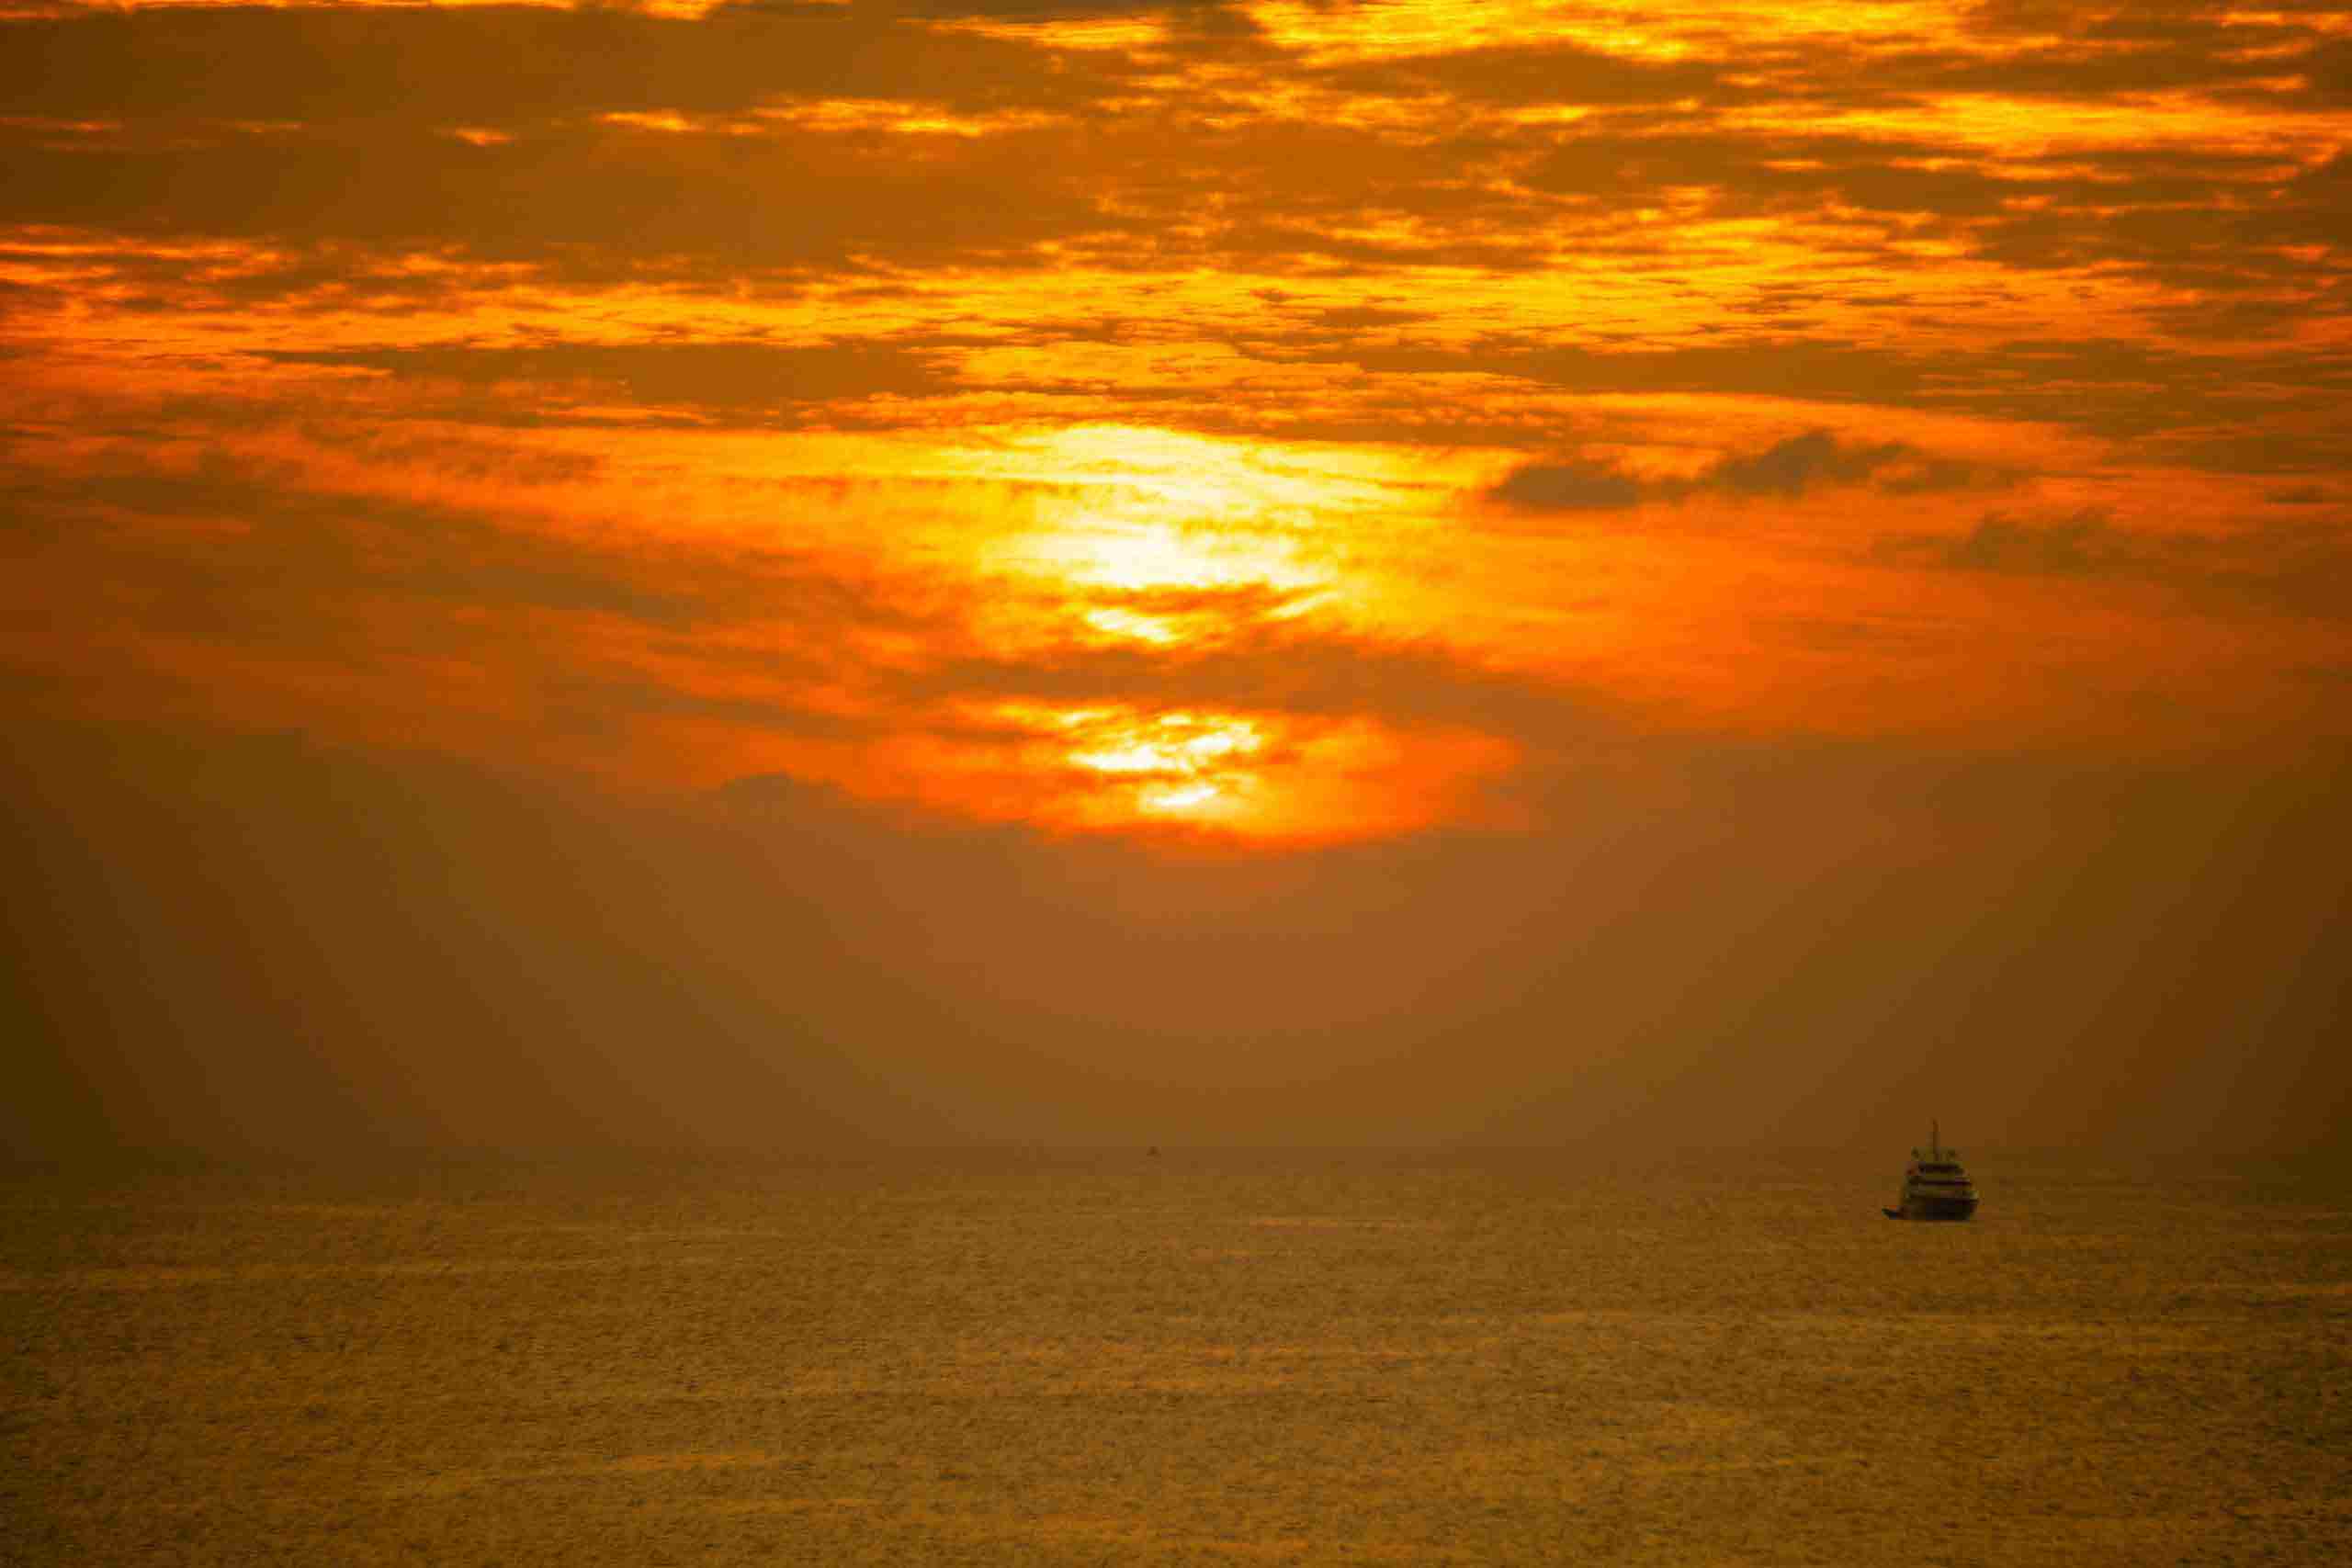 Marina Sunset View_Maafushi